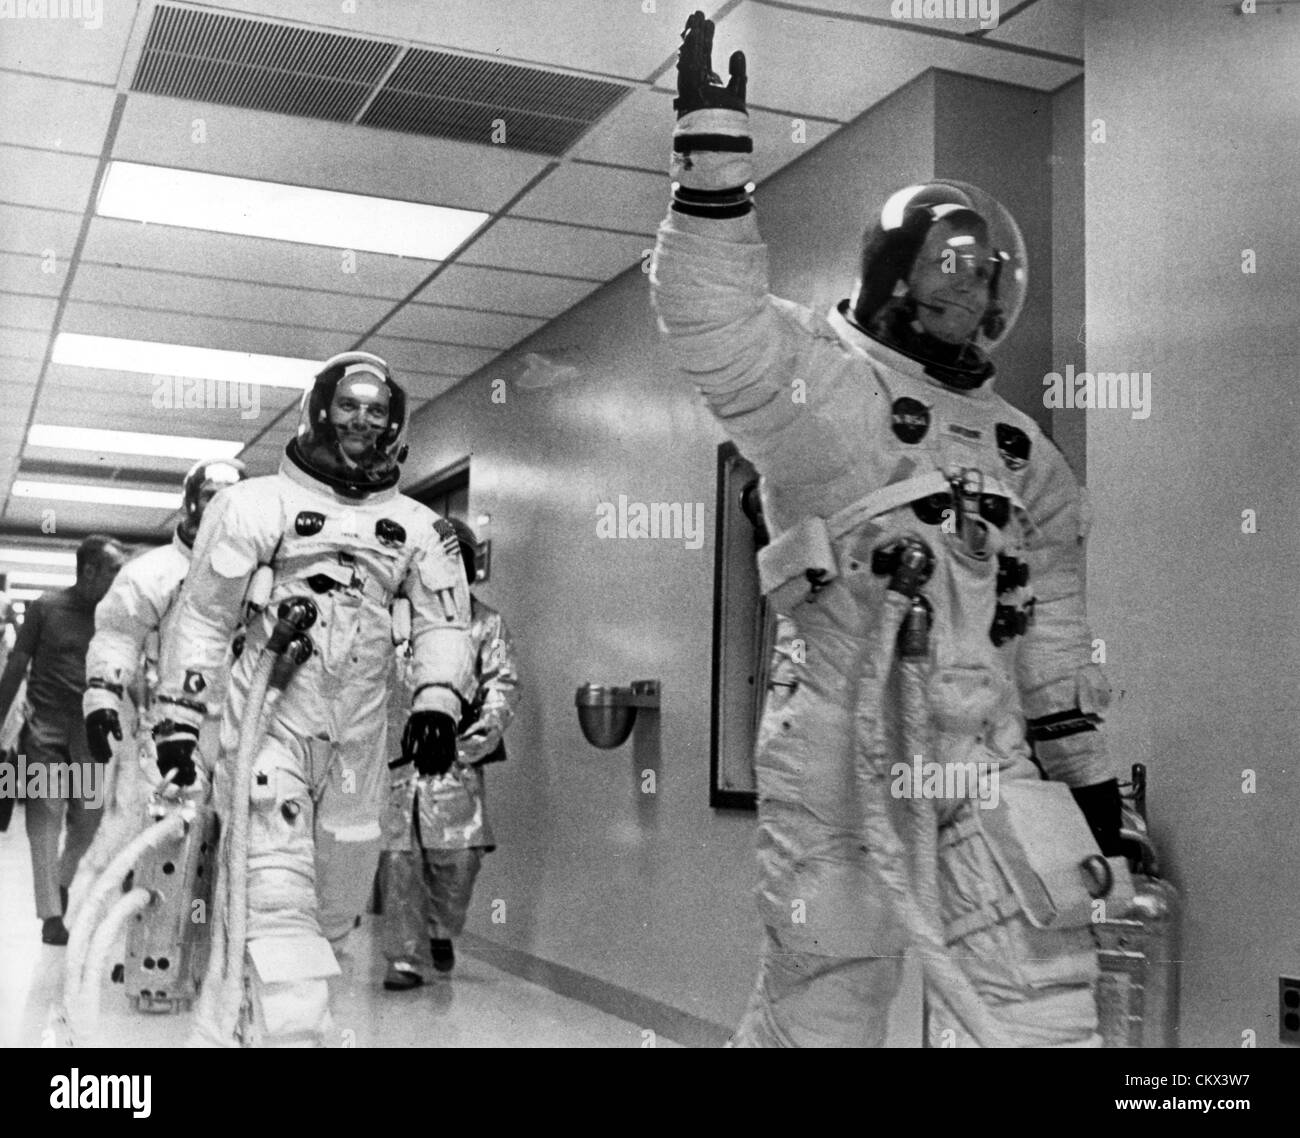 7 juin 1969 - Merritt Island, FL, États-Unis - Les membres d'équipage d'Apollo 11 vu qu'il quitte le centre de l'espace prêt à aller sur la lune, dirigé par Neil Armstrong, Edwin "Buzz" Aldrin, et Michael Collins. (Crédit Image : © Keystone Photos USA/ZUMAPRESS.com) Banque D'Images